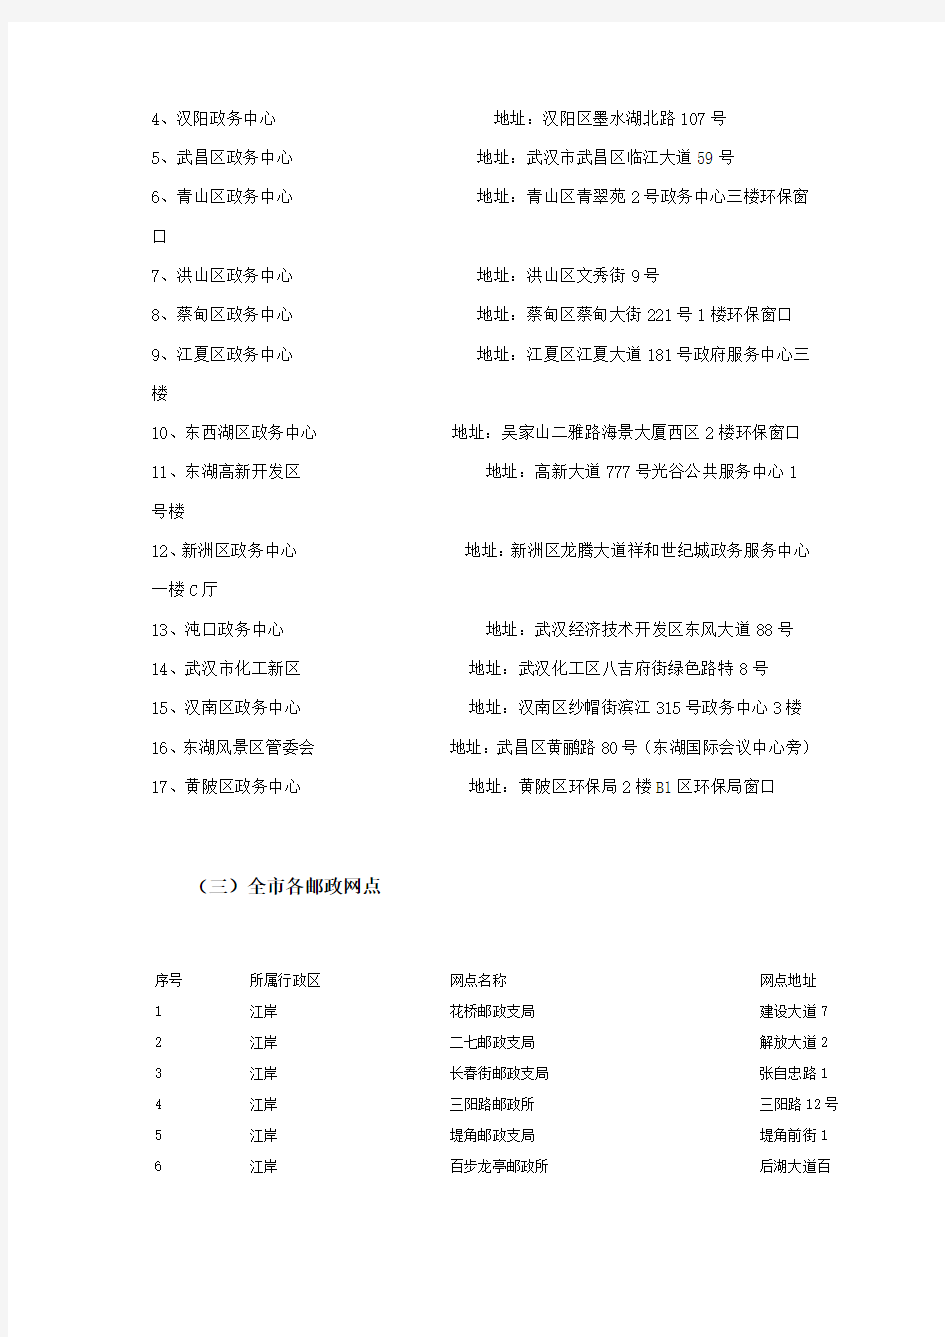 湖北省武汉市场免检、非免检车辆环保标志申请地址